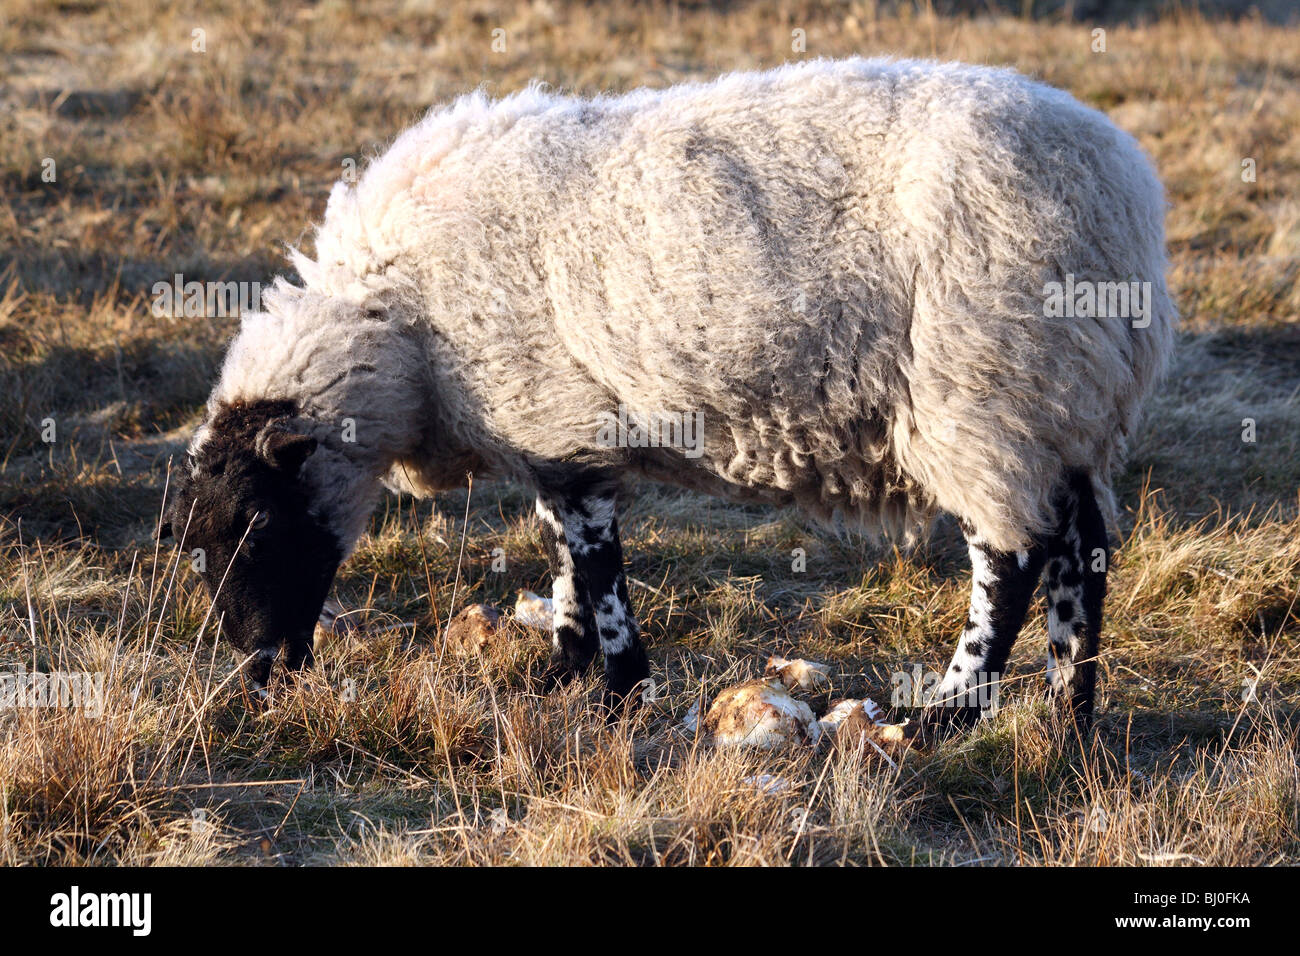 Schafe Rassen Derbyshire Gritstone Schafe einen heimischen Bauernhof Tier, das in der Regel abgefragt wird Stockfoto